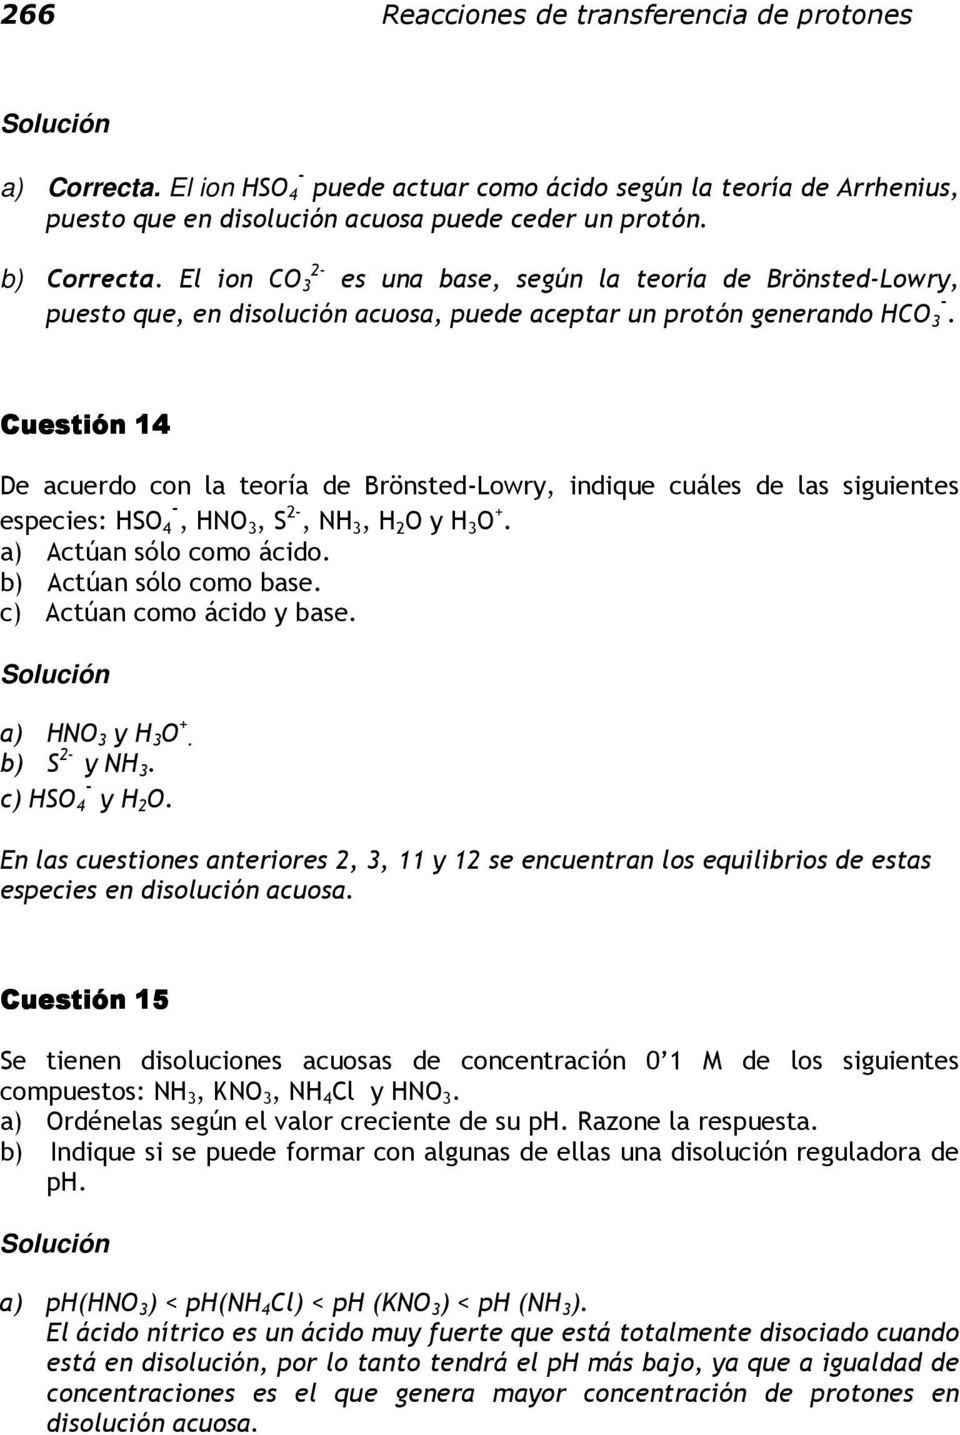 Cuestión 14 De acuerdo con la teoría de Brönsted-Lowry, indique cuáles de las siguientes especies: HSO 4 -, HNO3, S 2-, NH 3, H 2 O y H 3 O +. a) Actúan sólo como ácido. b) Actúan sólo como base.